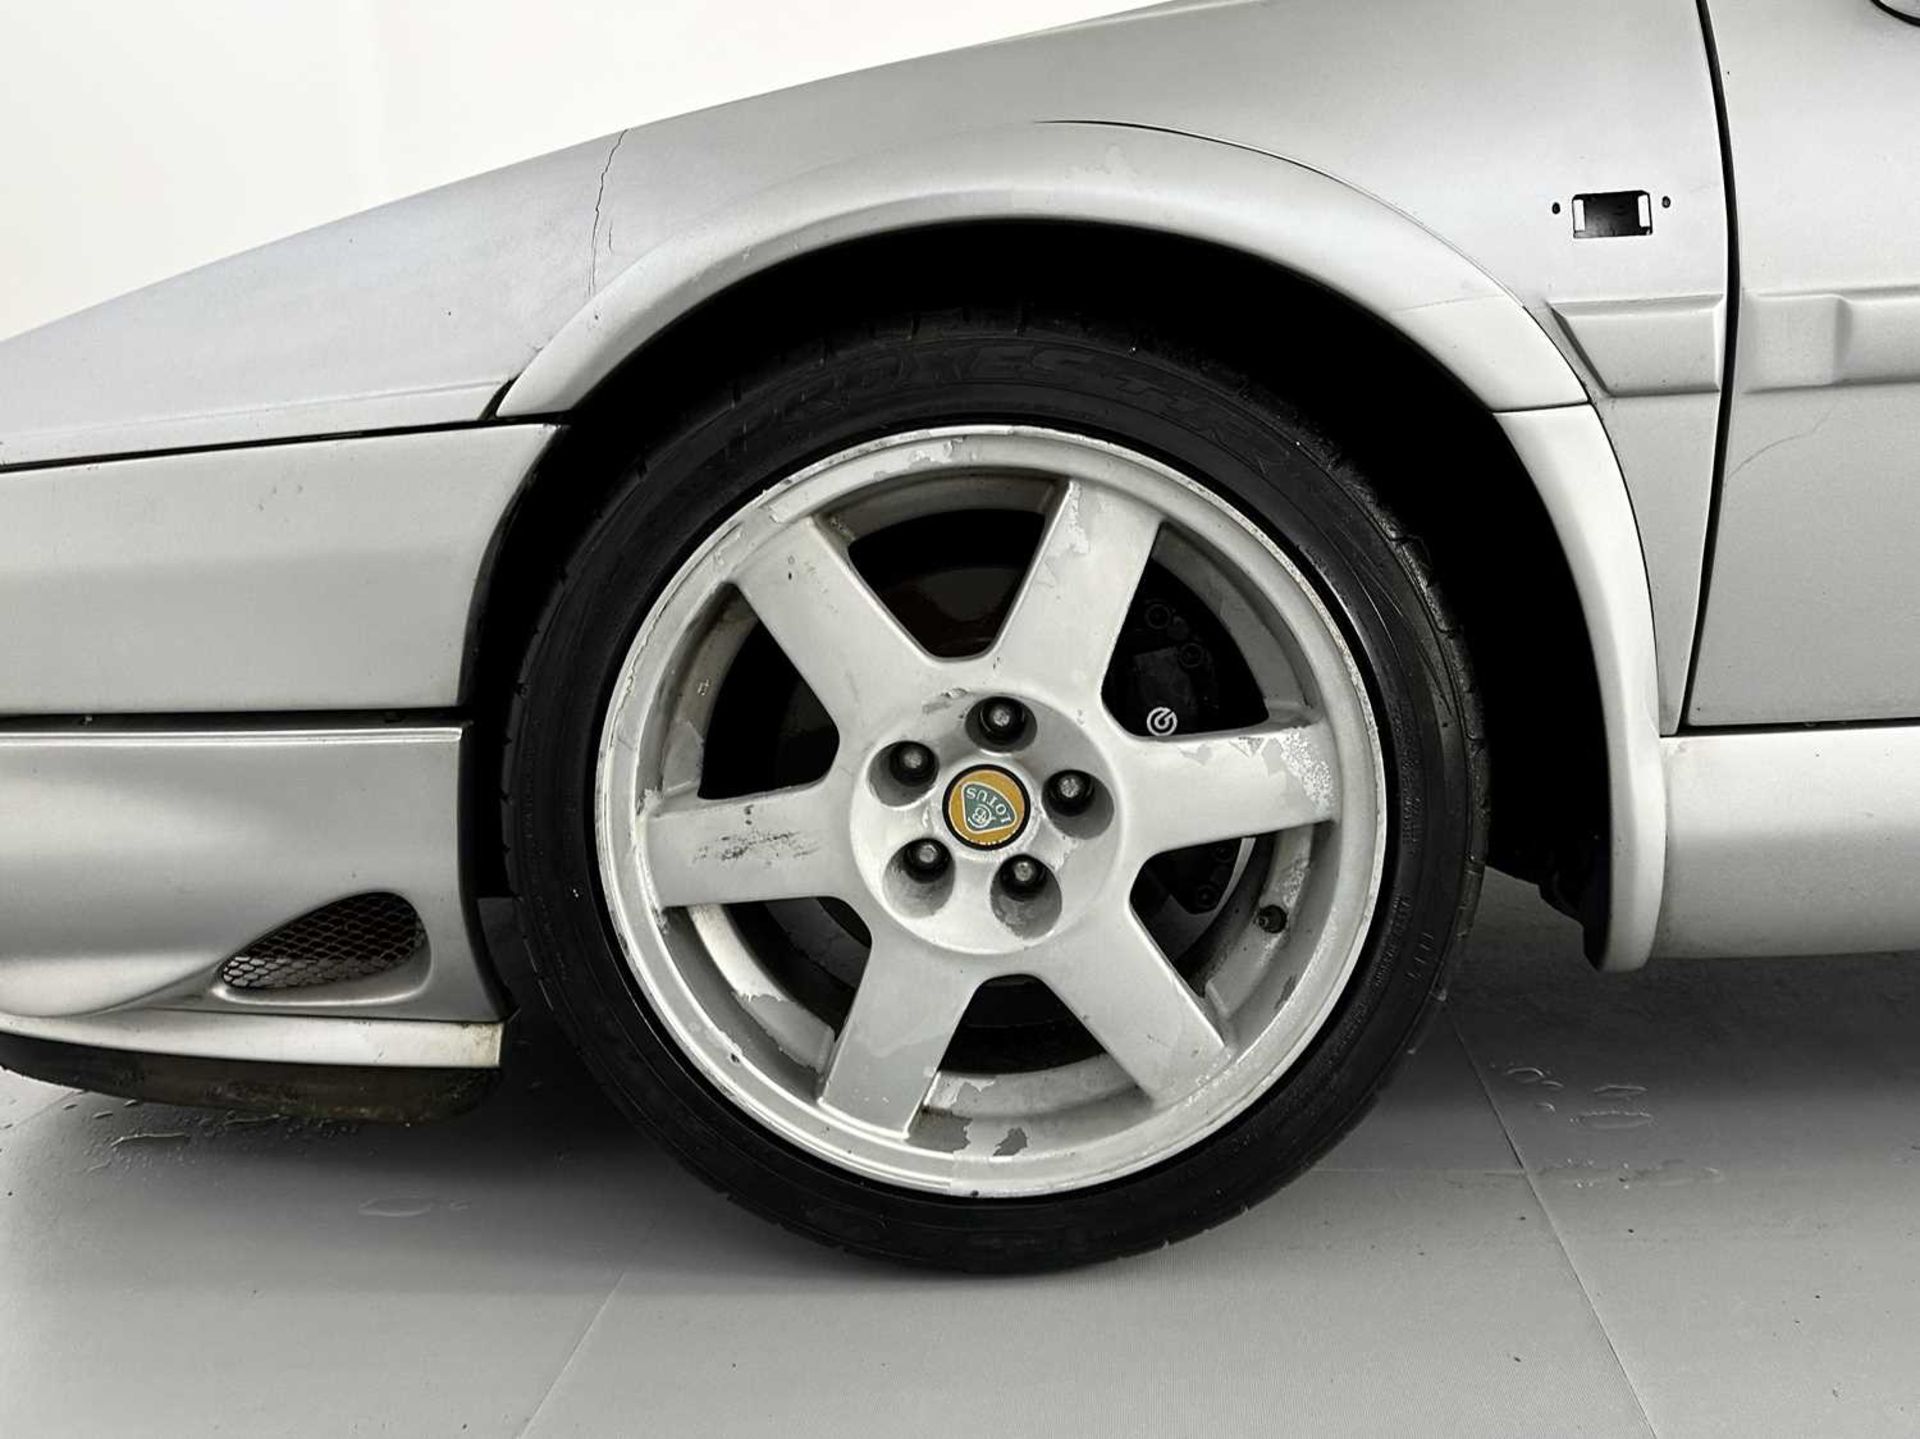 1998 Lotus Esprit V8 GT - Image 13 of 25